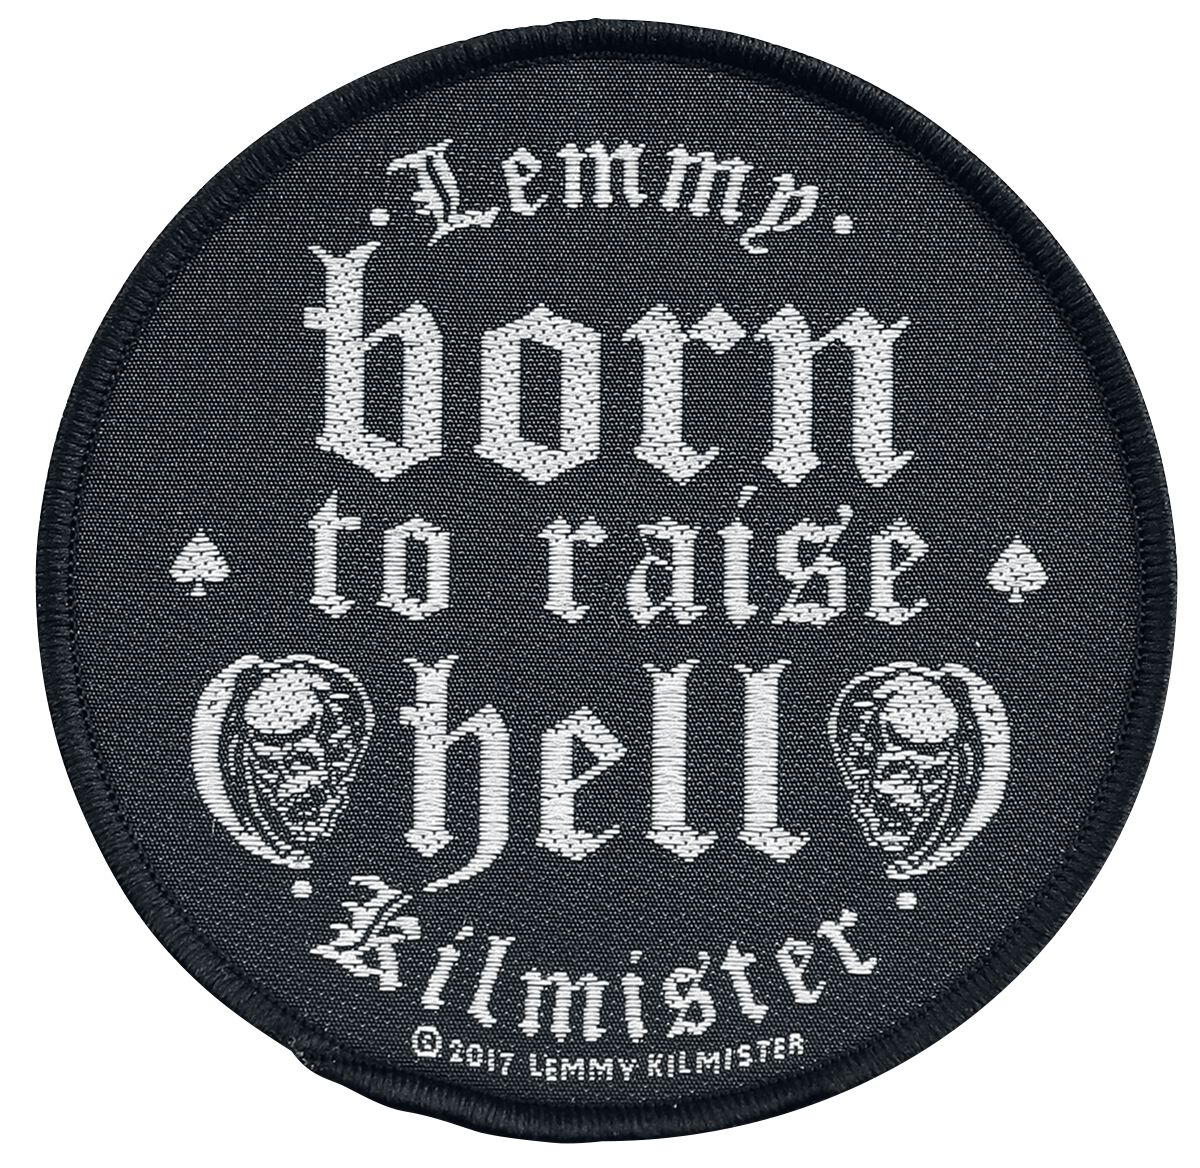 Patch de Motörhead - Lemmy Kilmister - Born to raise hell - pour Unisexe - noir/blanc